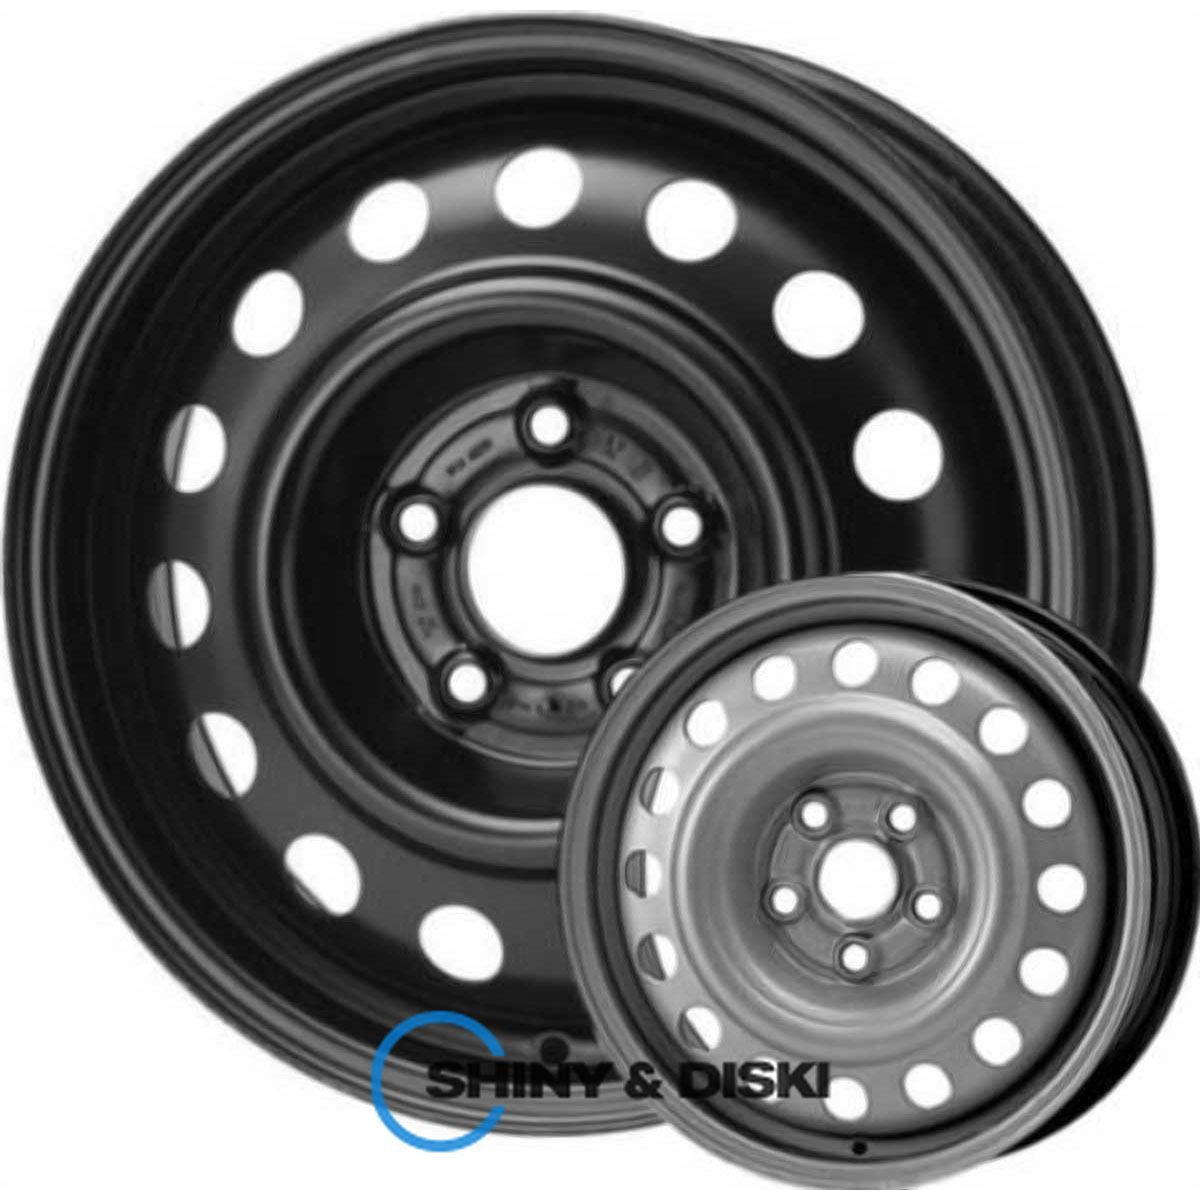 steel wheels kap b r15 w6 pcd5x108 et52.5 dia63.4